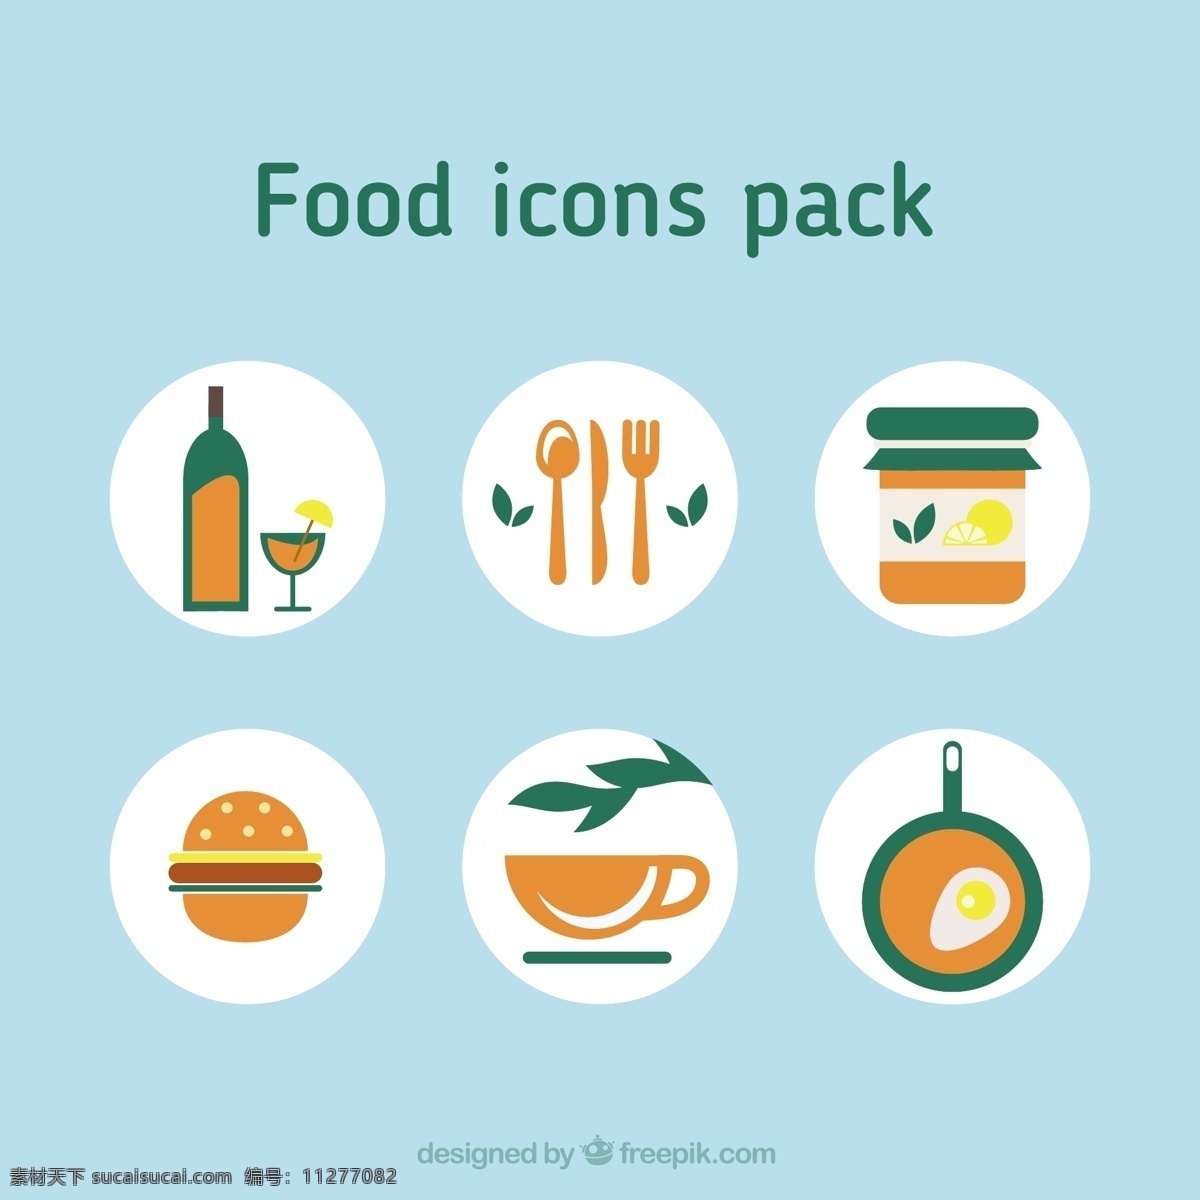 橙色 绿色 食品 图标 包 餐厅 颜色 快速食品 食品图标 快速 餐饮 包装 图标包 青色 天蓝色